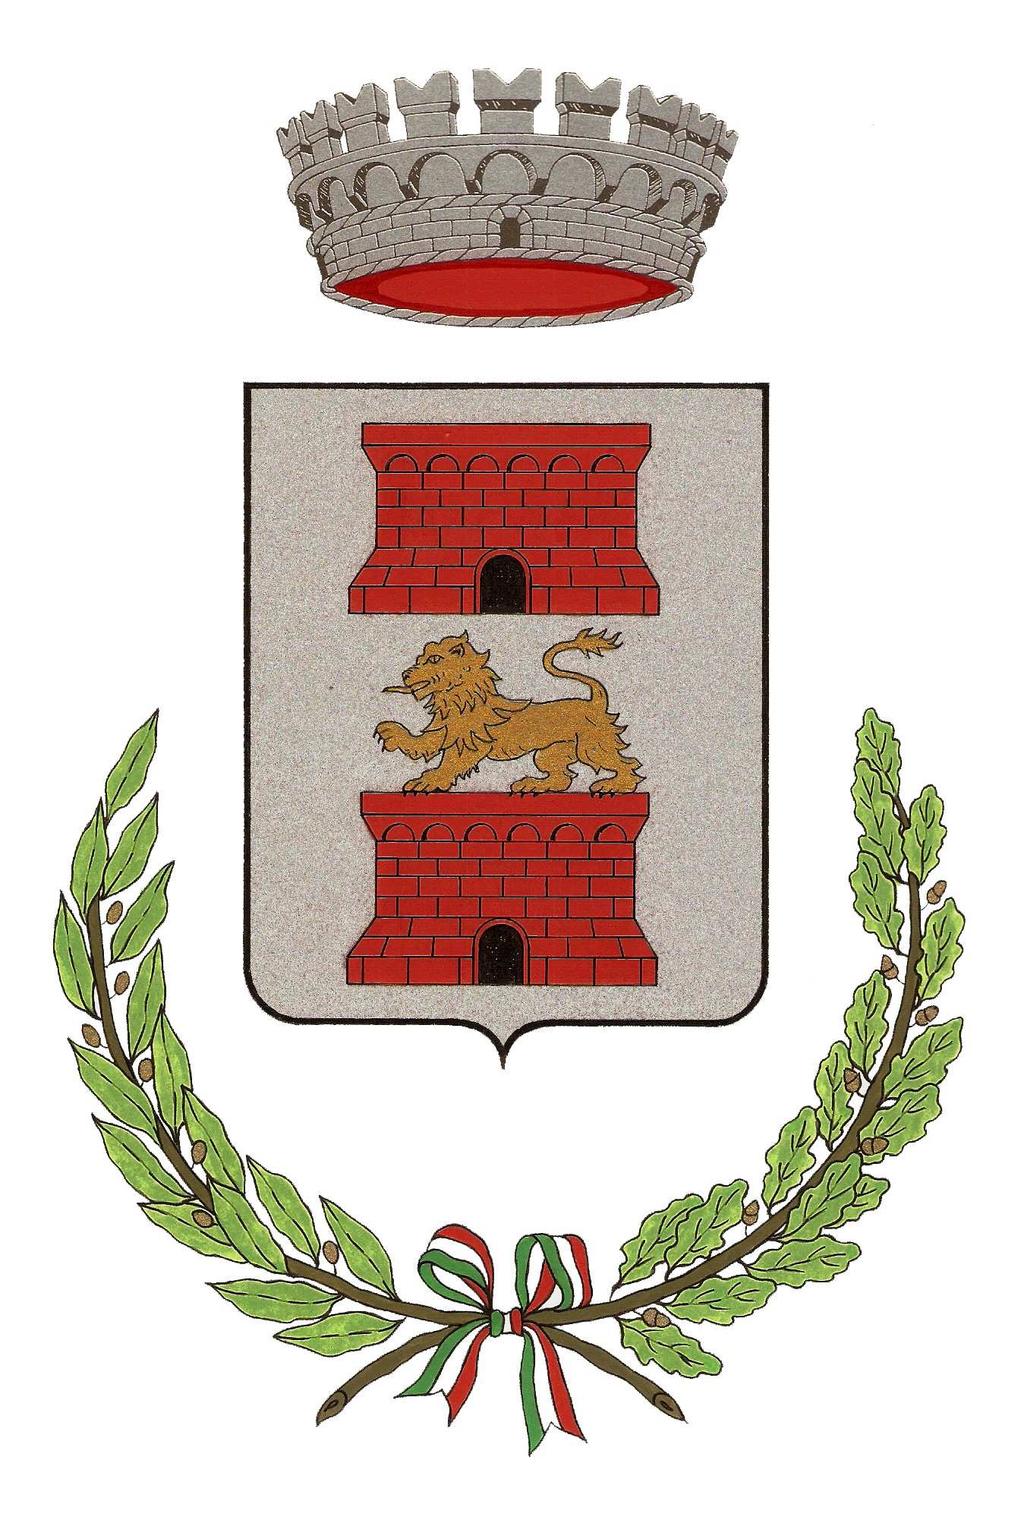 ORIGINALE COMUNE DI FAUGLIA Provincia di Pisa VERBALE DI DELIBERAZIONE DELLA GIUNTA COMUNALE N.113 29.08.